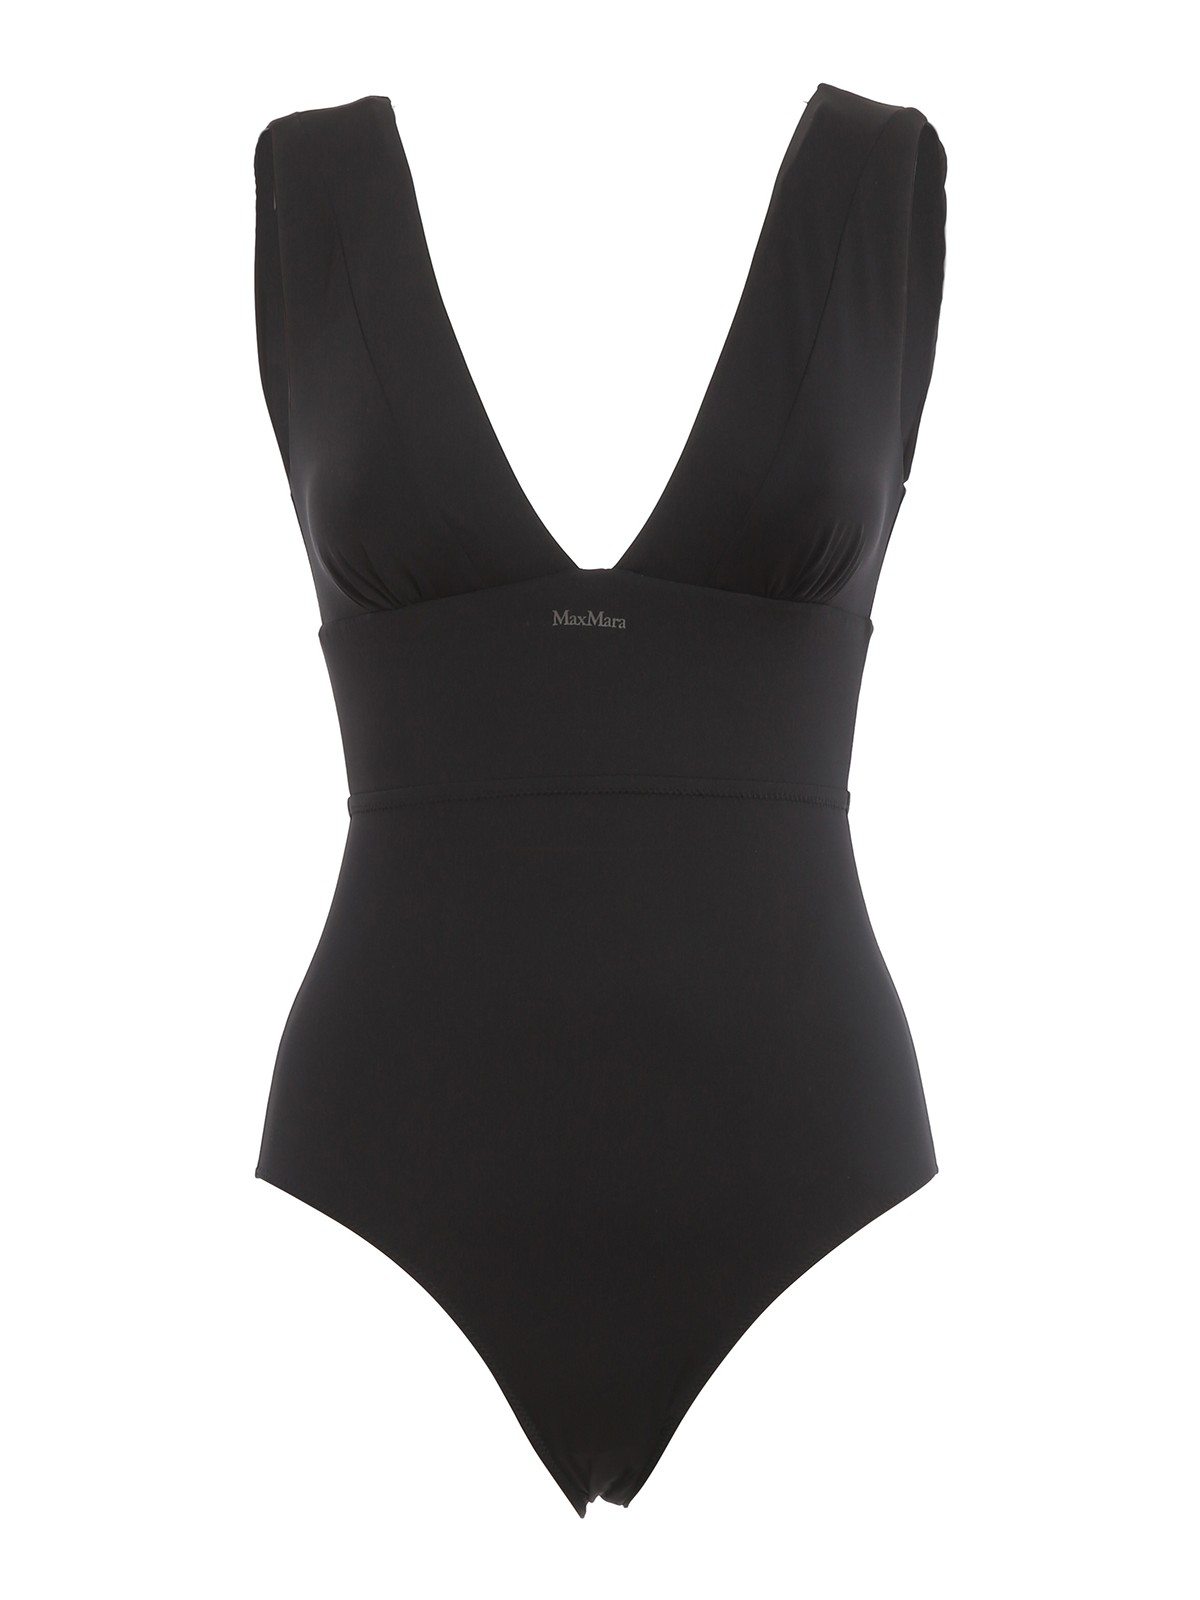 One-piece Max Mara - Tania one-piece swimsuit - 383107286004 | iKRIX.com